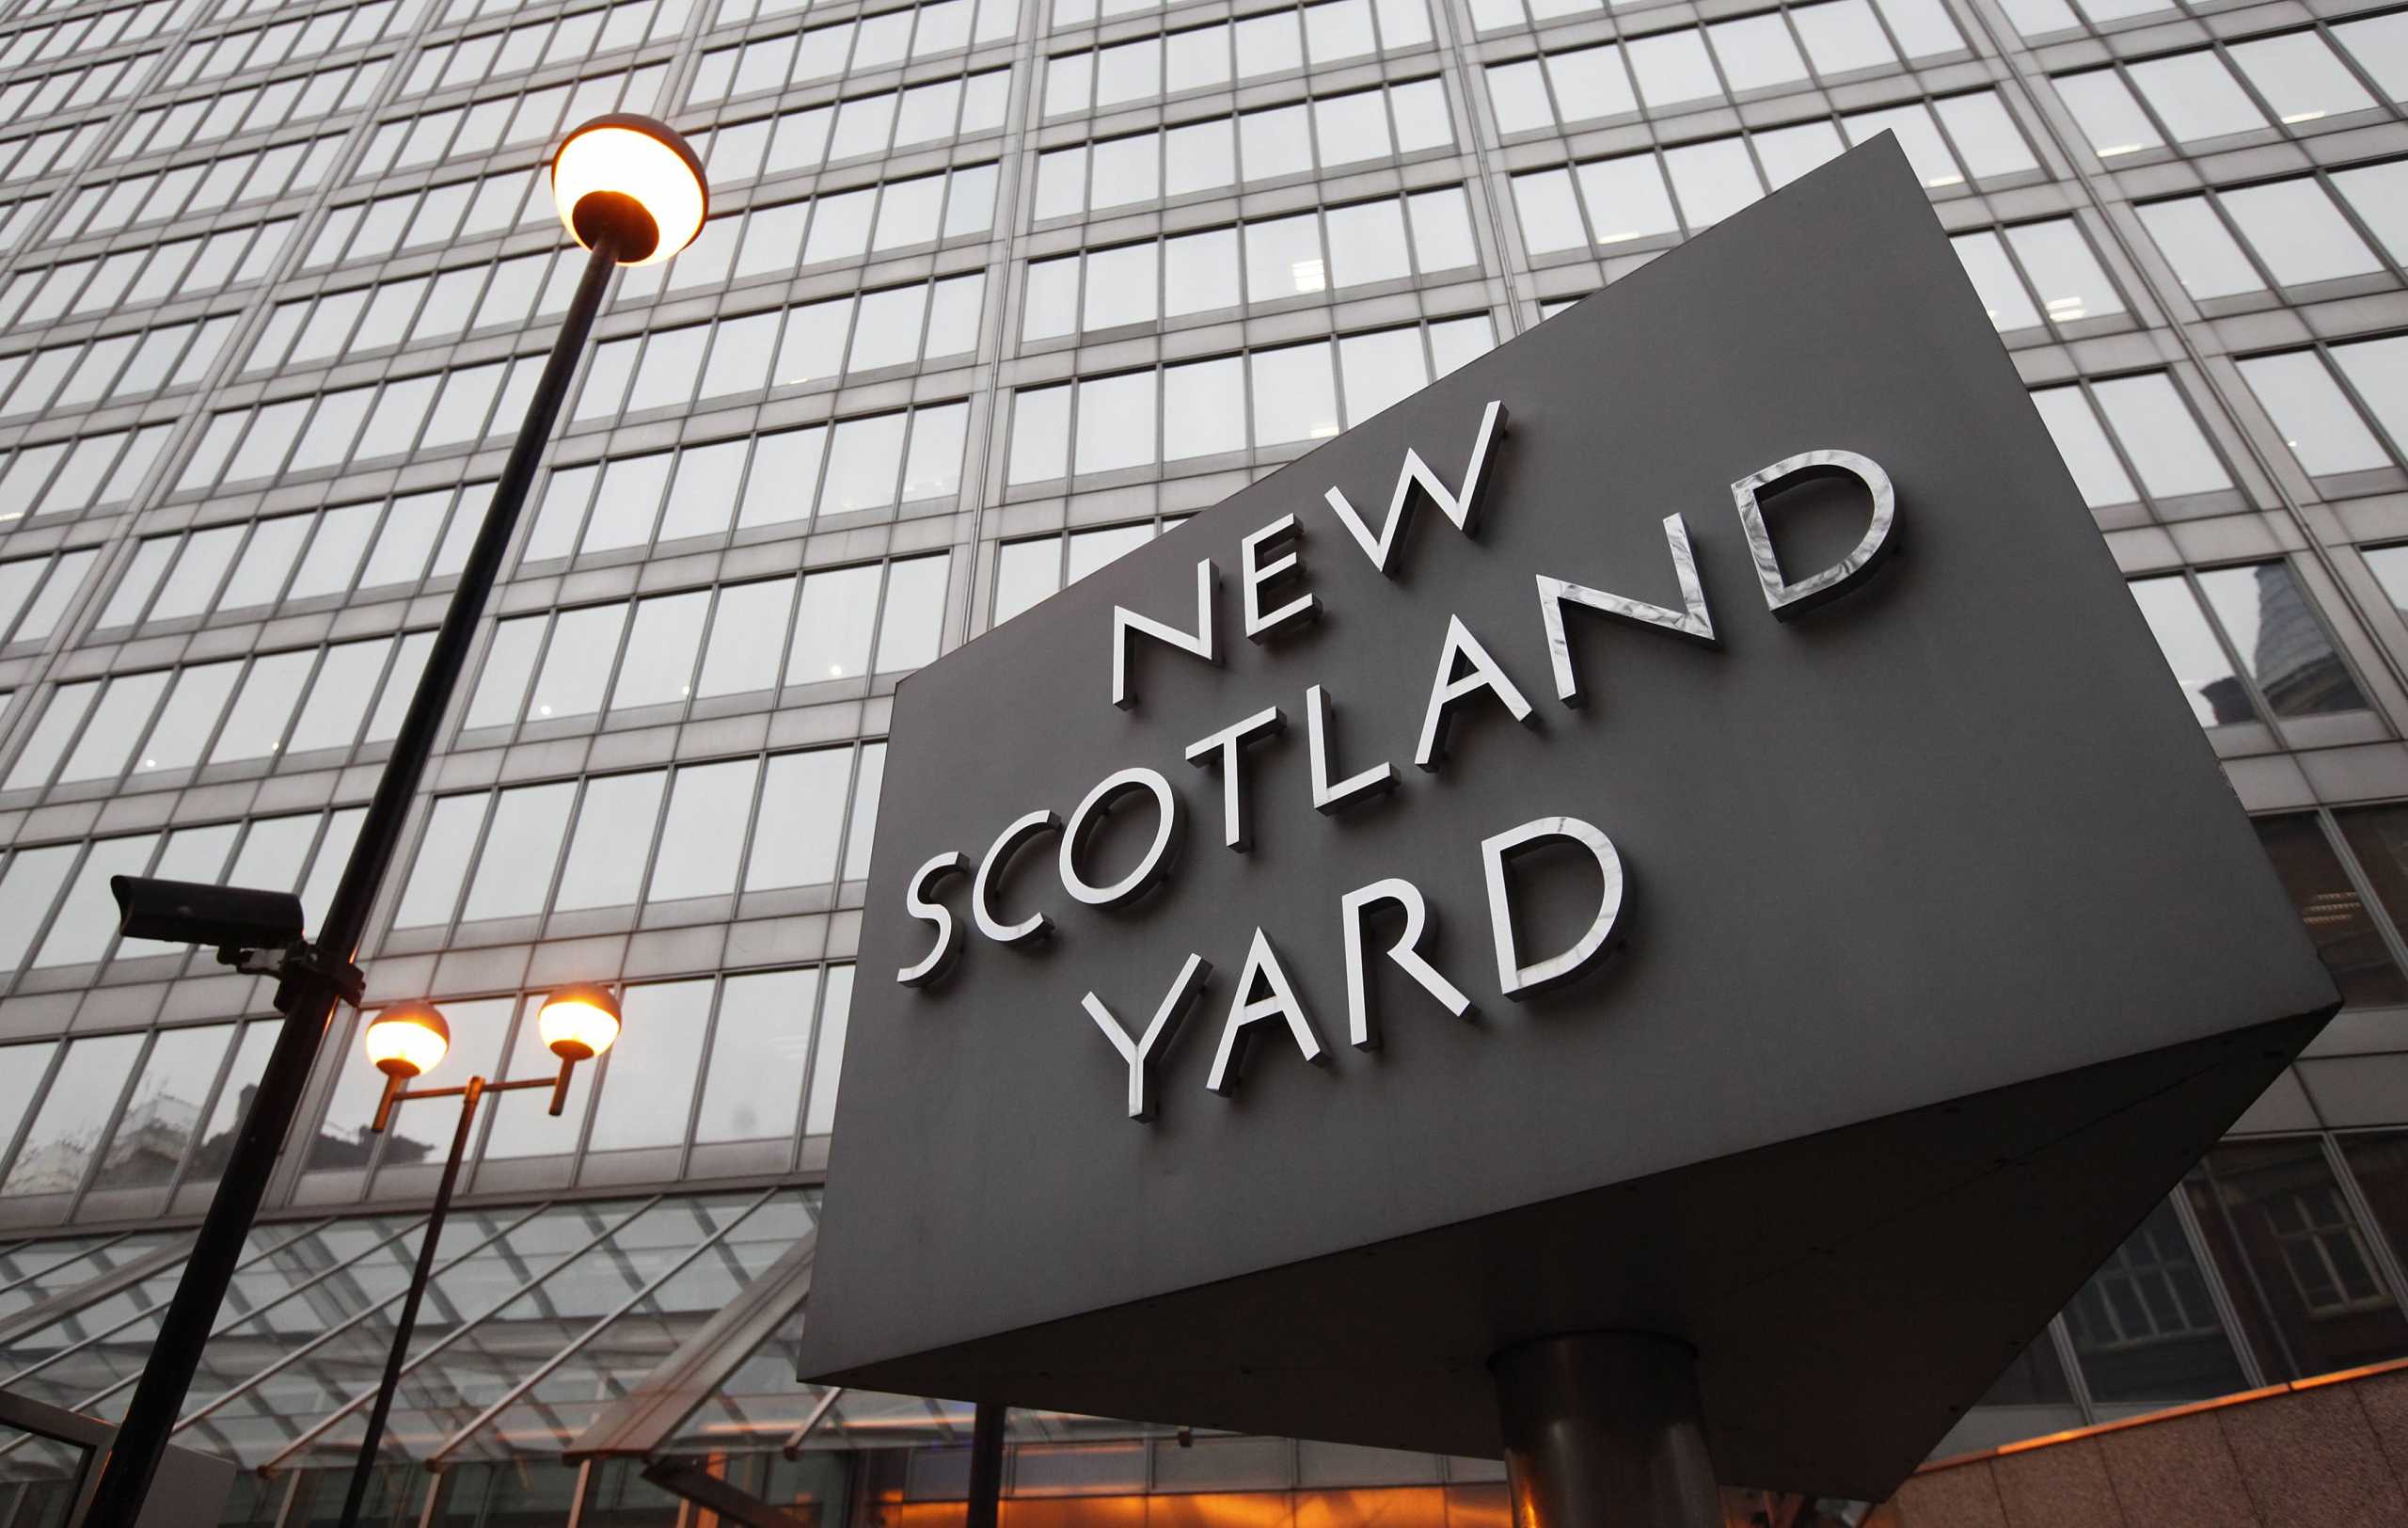 Βρετανία: Η Σκότλαντ Γιαρντ επιταχύνει την έρευνα για τα πάρτι της Ντάουνινγκ Στριτ